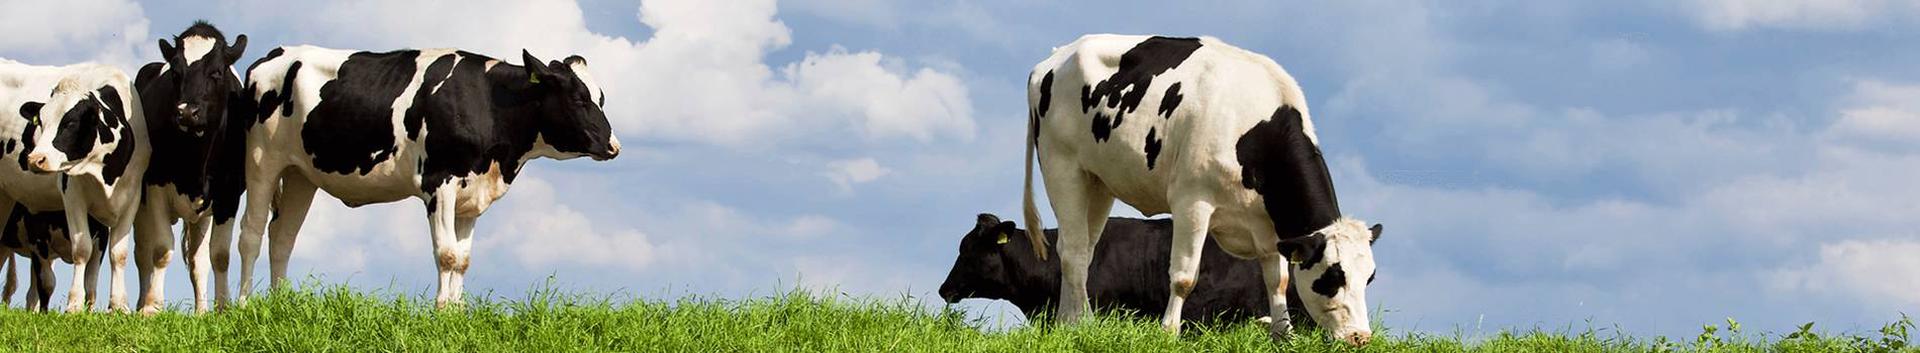 piimatööstus, piima ja piimatoodete tootmine, toiduainetetööstus, piimakarjakasvatus